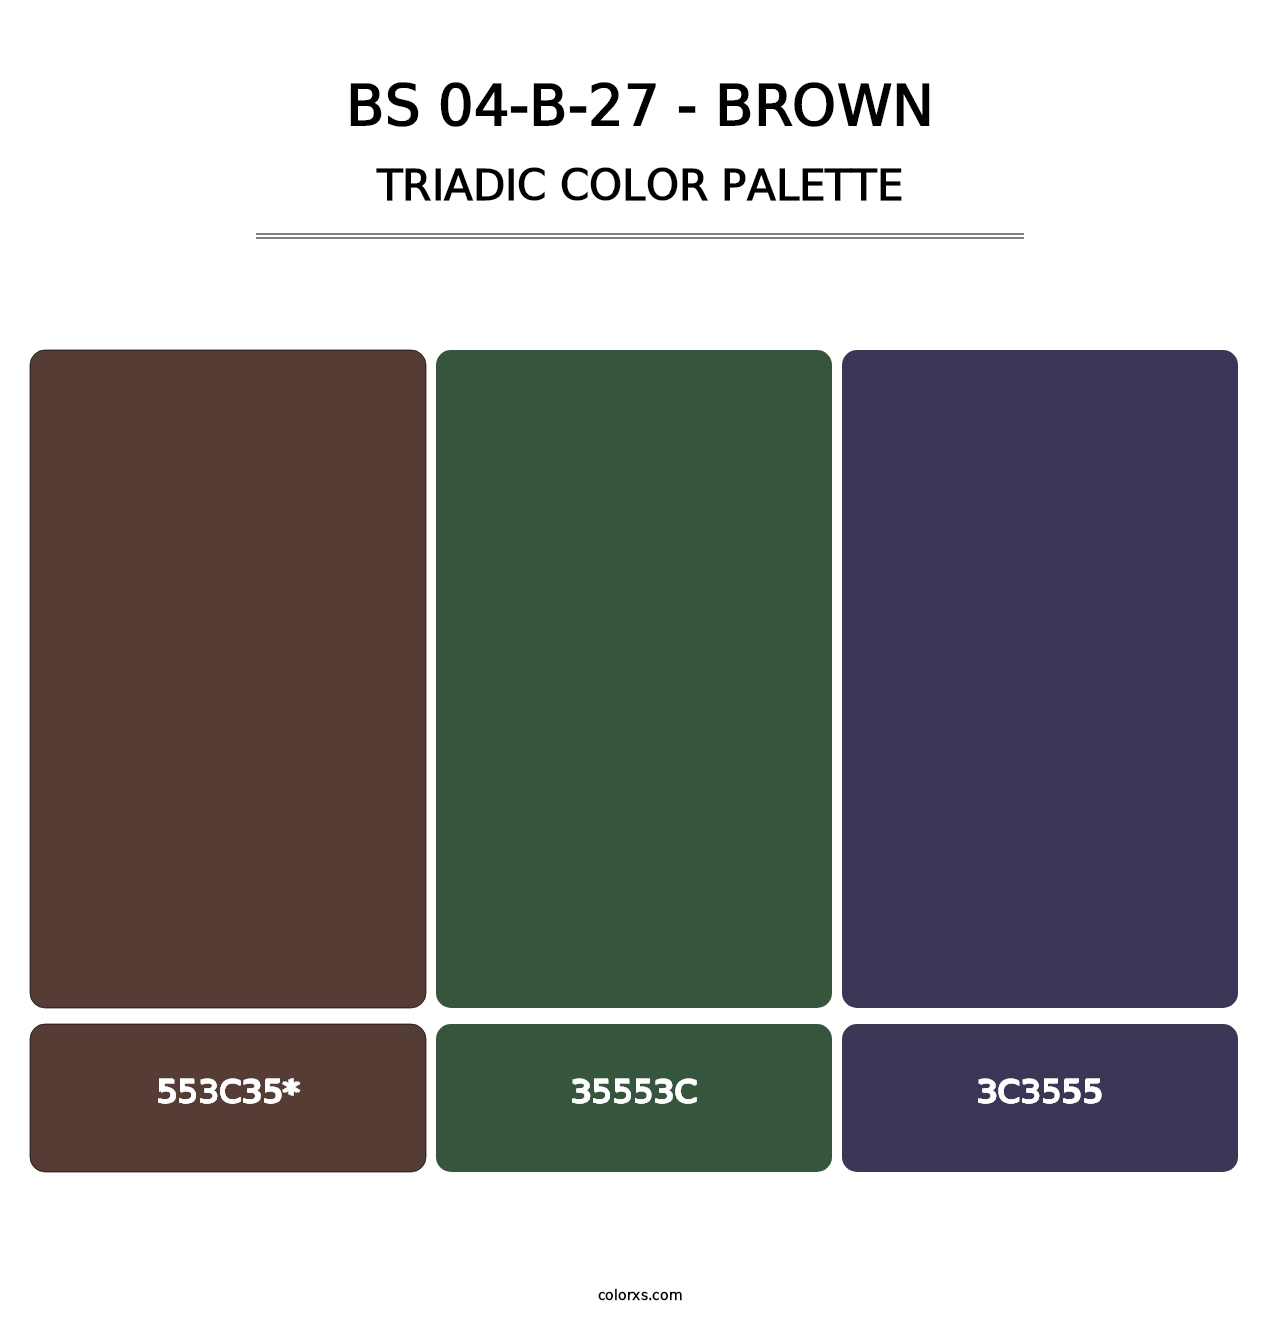 BS 04-B-27 - Brown - Triadic Color Palette